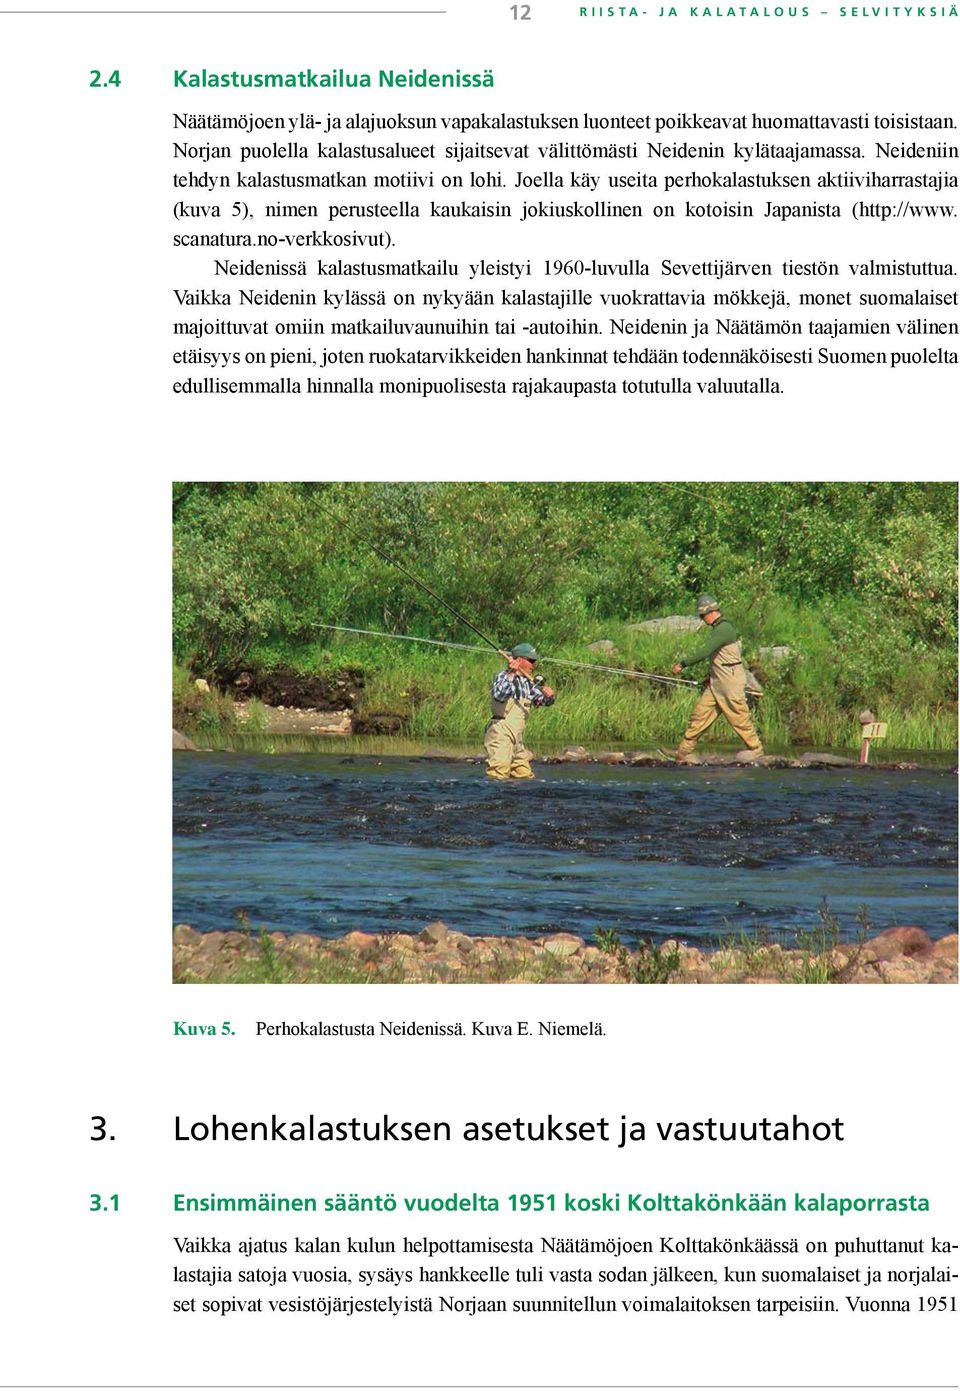 Joella käy useita perhokalastuksen aktiiviharrastajia (kuva 5), nimen perusteella kaukaisin jokiuskollinen on kotoisin Japanista (http://www. scanatura.no-verkkosivut).